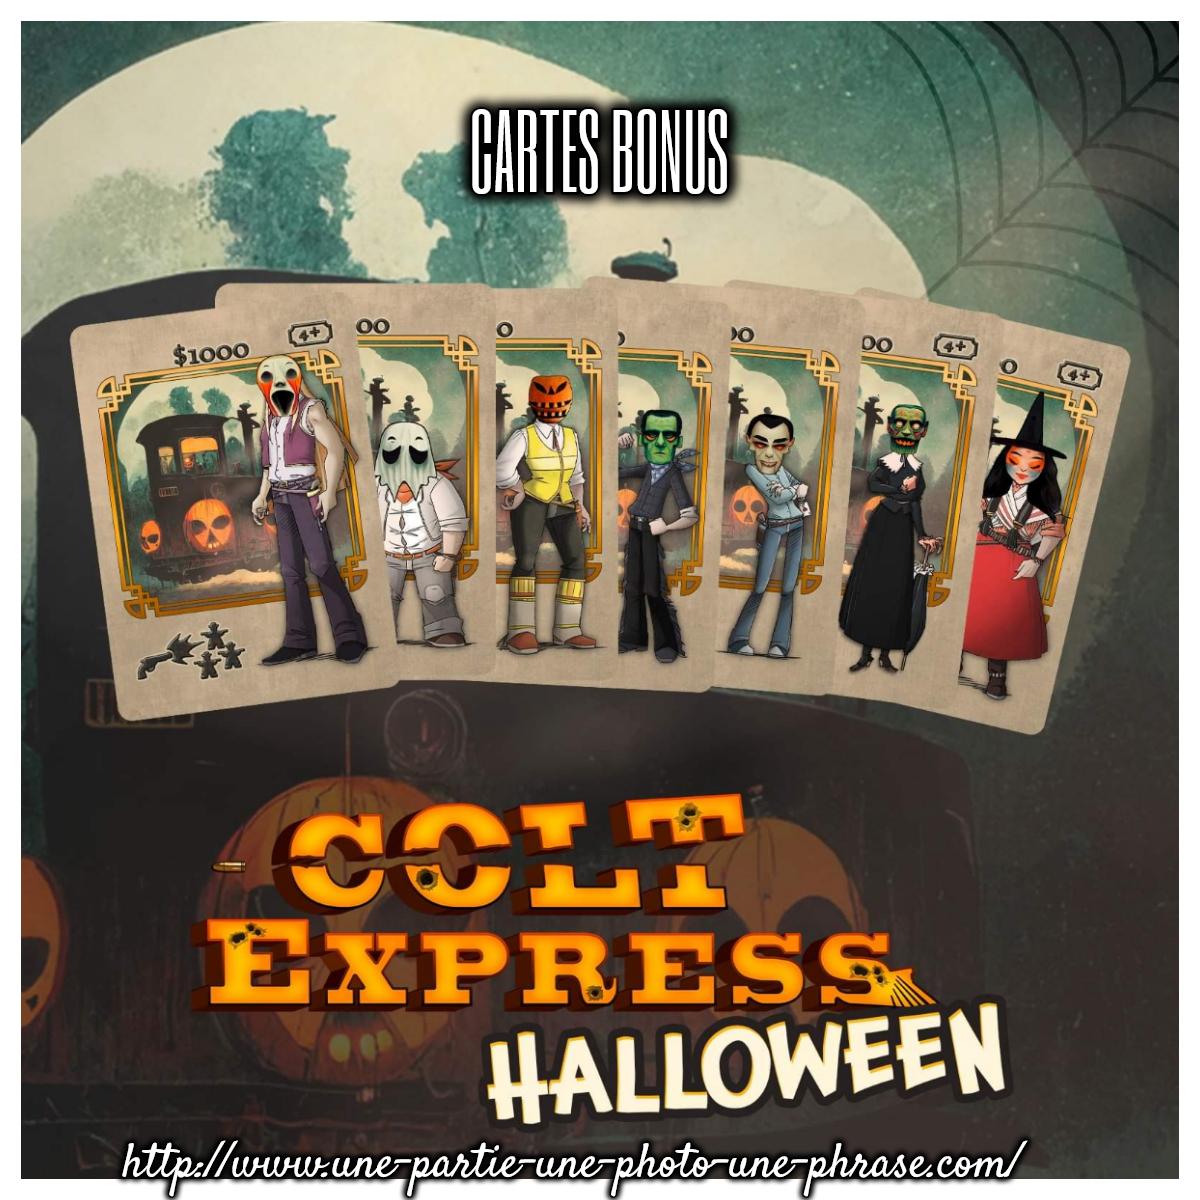 cartes pour Colt express, une partie, une photo